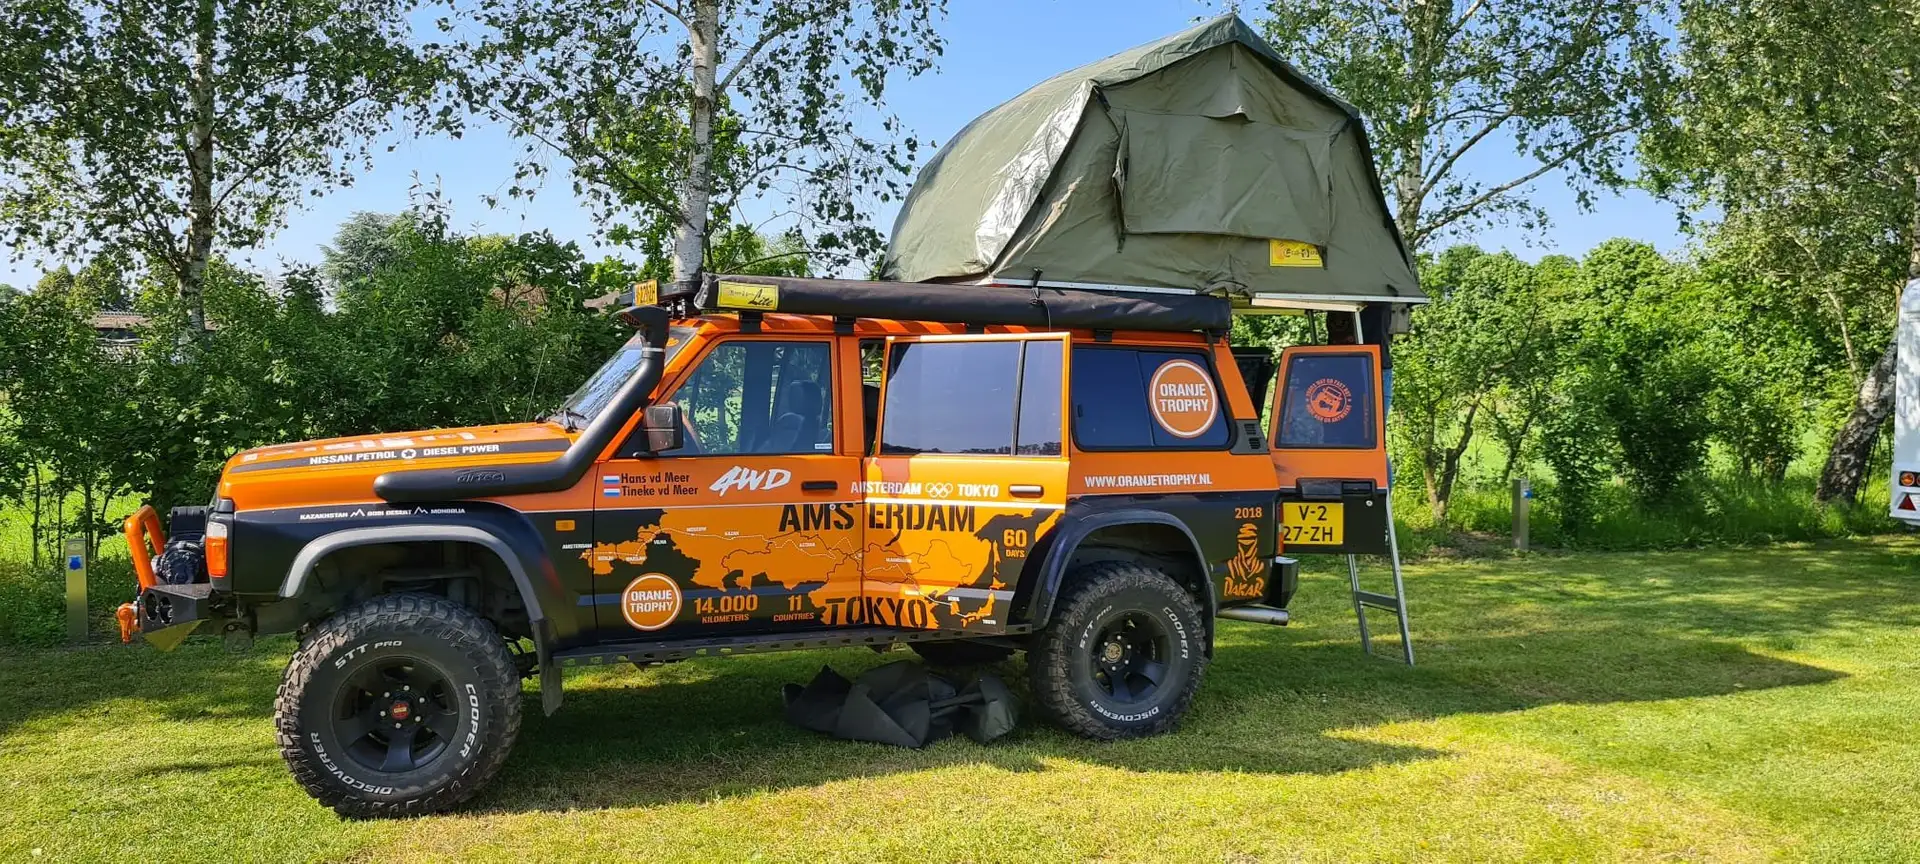 Nissan Patrol 4x4 off-road camper Narancs - 2